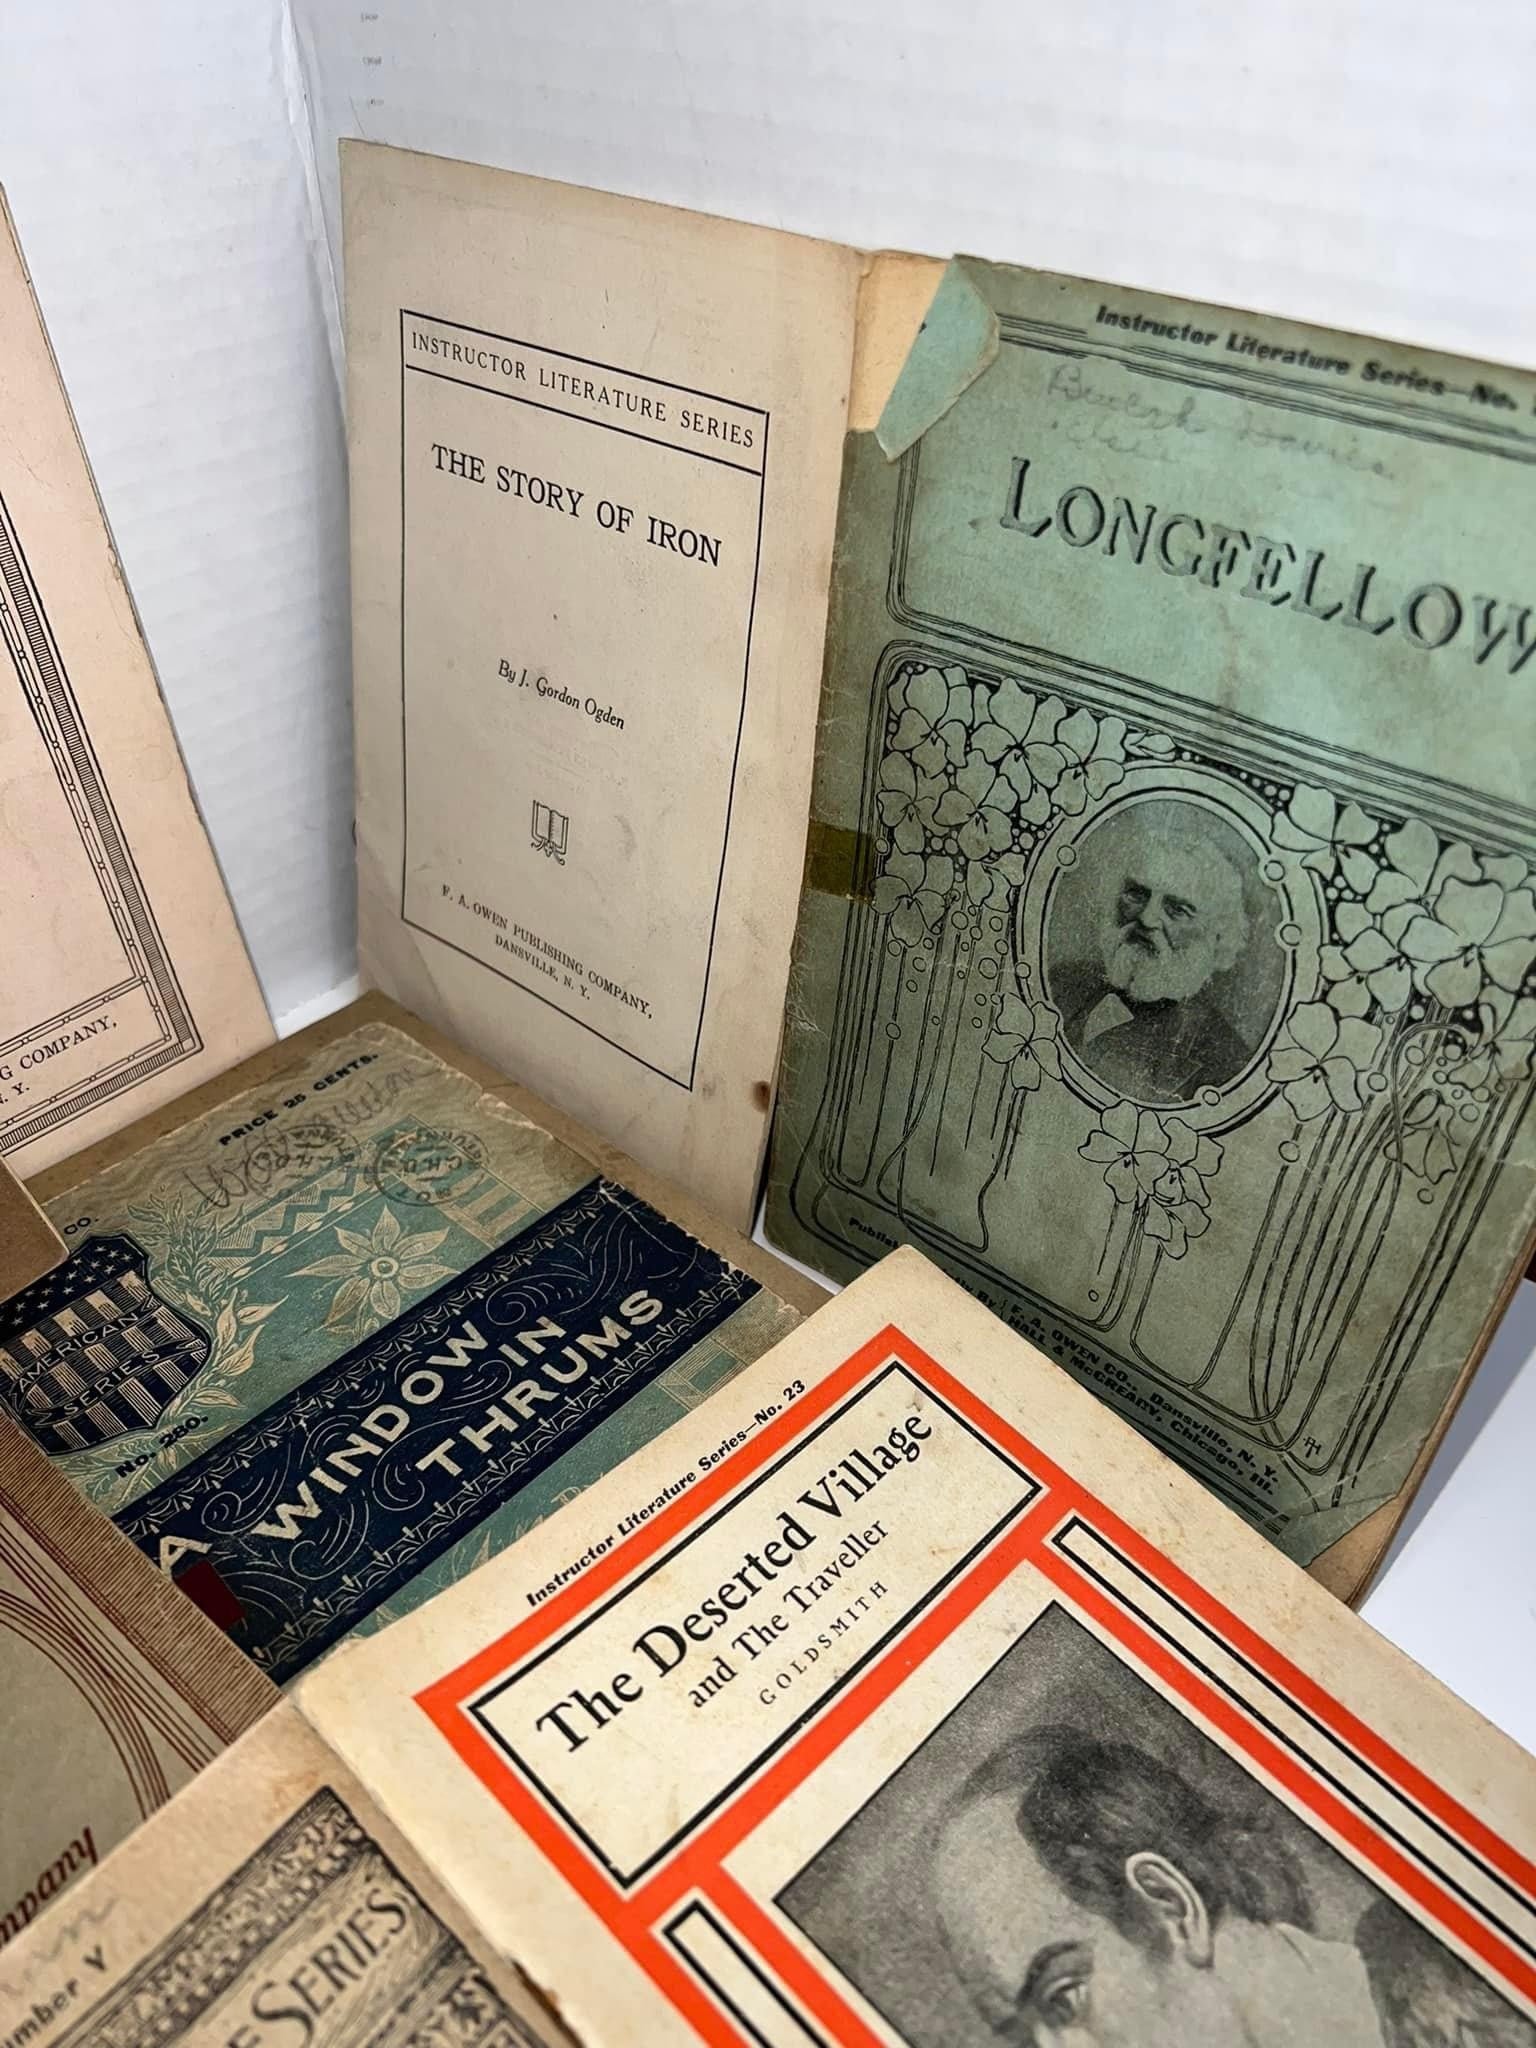 Antique 14 novel booklet lot 1890s —1900s fiction literature